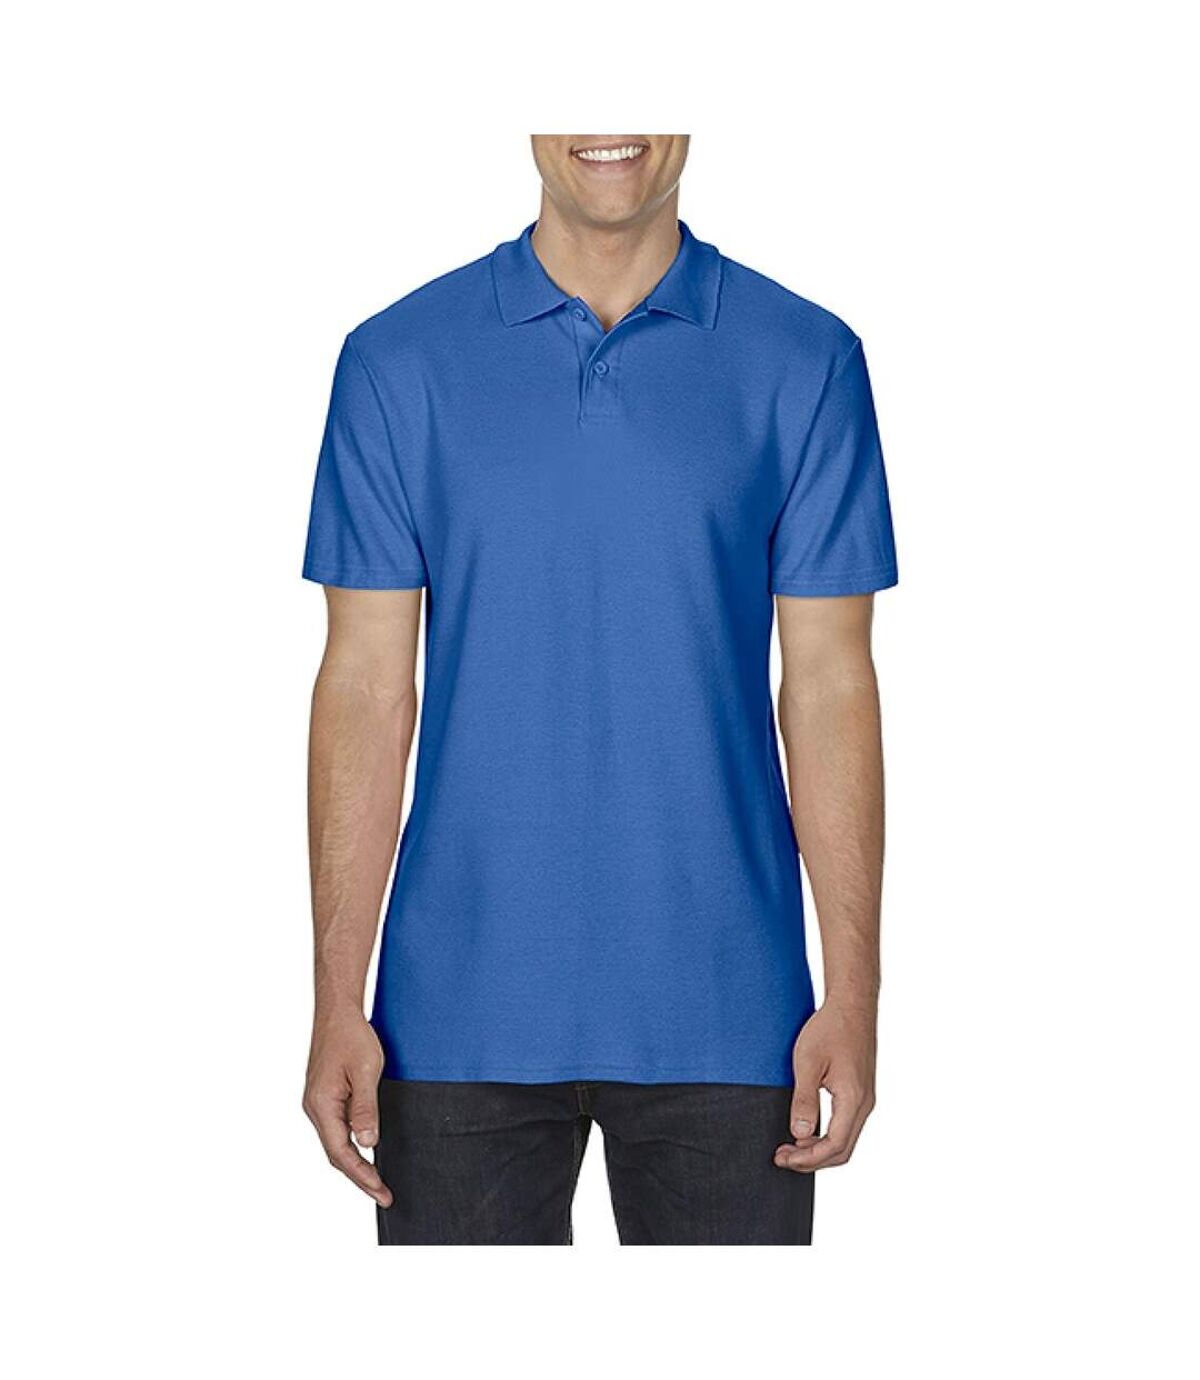 Gildan Softstyle Mens Short Sleeve Double Pique Polo Shirt (Royal)